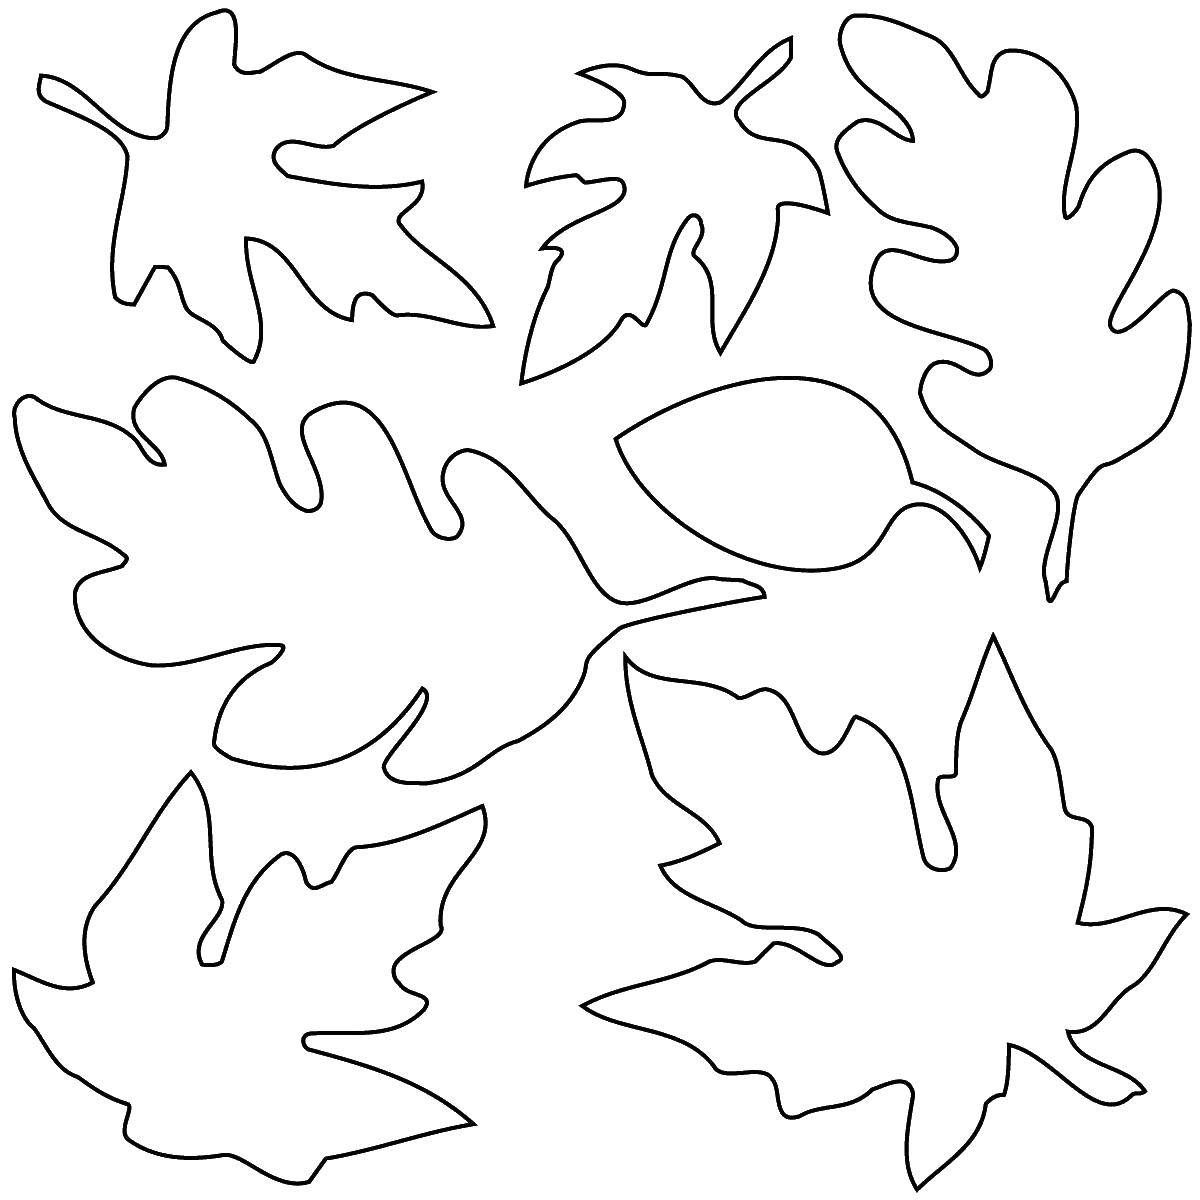 Название: Раскраска Контуры листьев. Категория: Контуры листьев. Теги: листья, контуры.